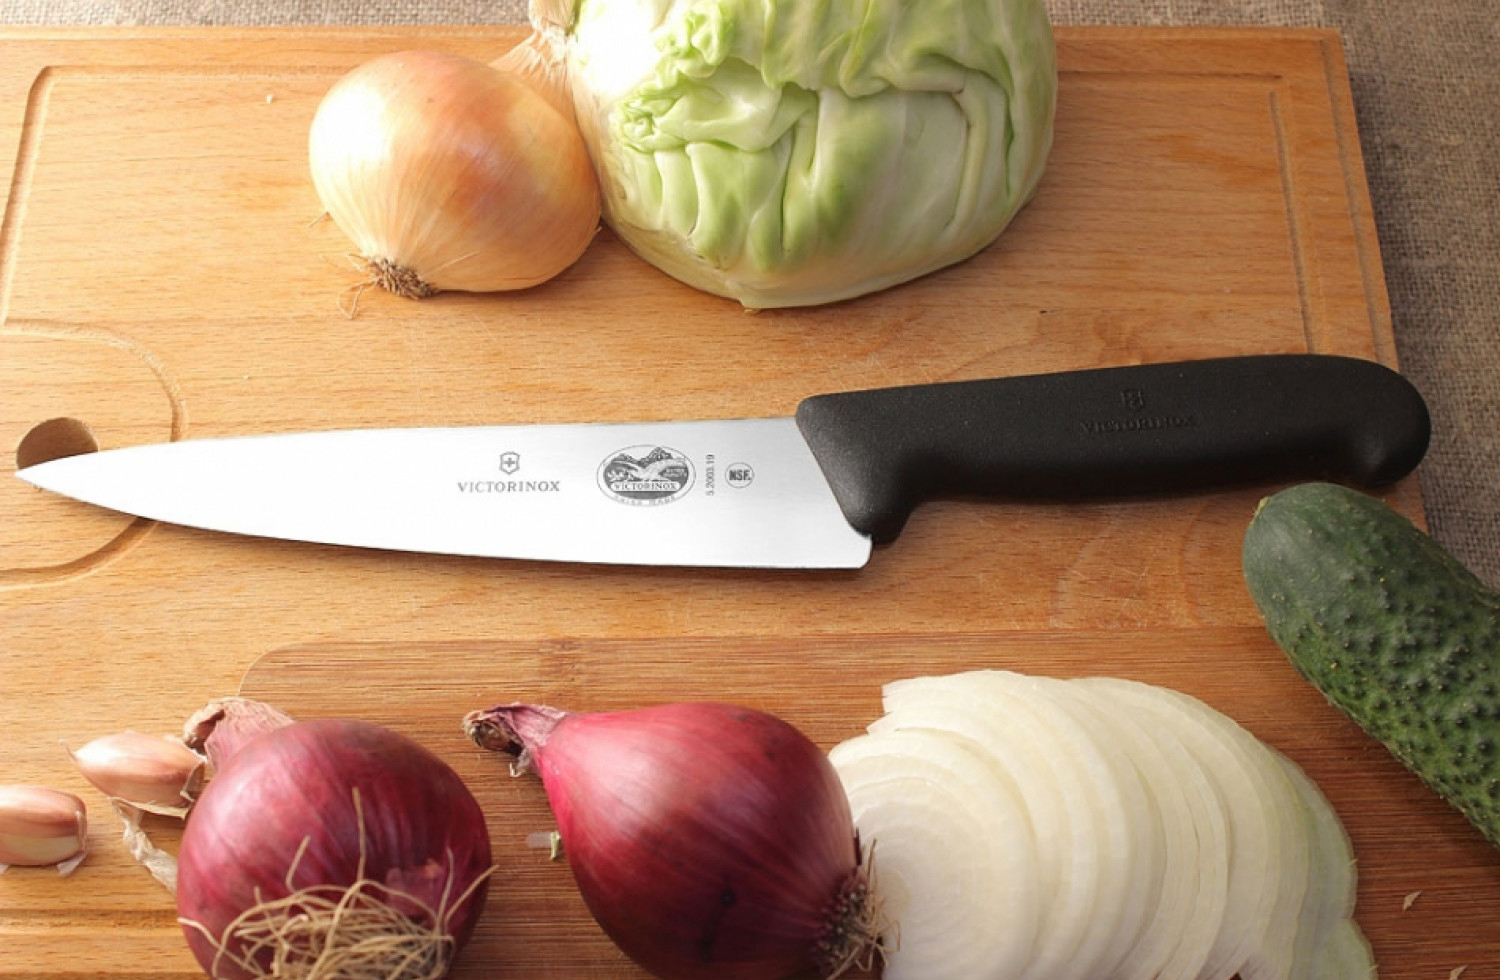 Кухонный нож Victorinox, сталь X55CrMoV14, рукоять полипропилен, черный от Ножиков